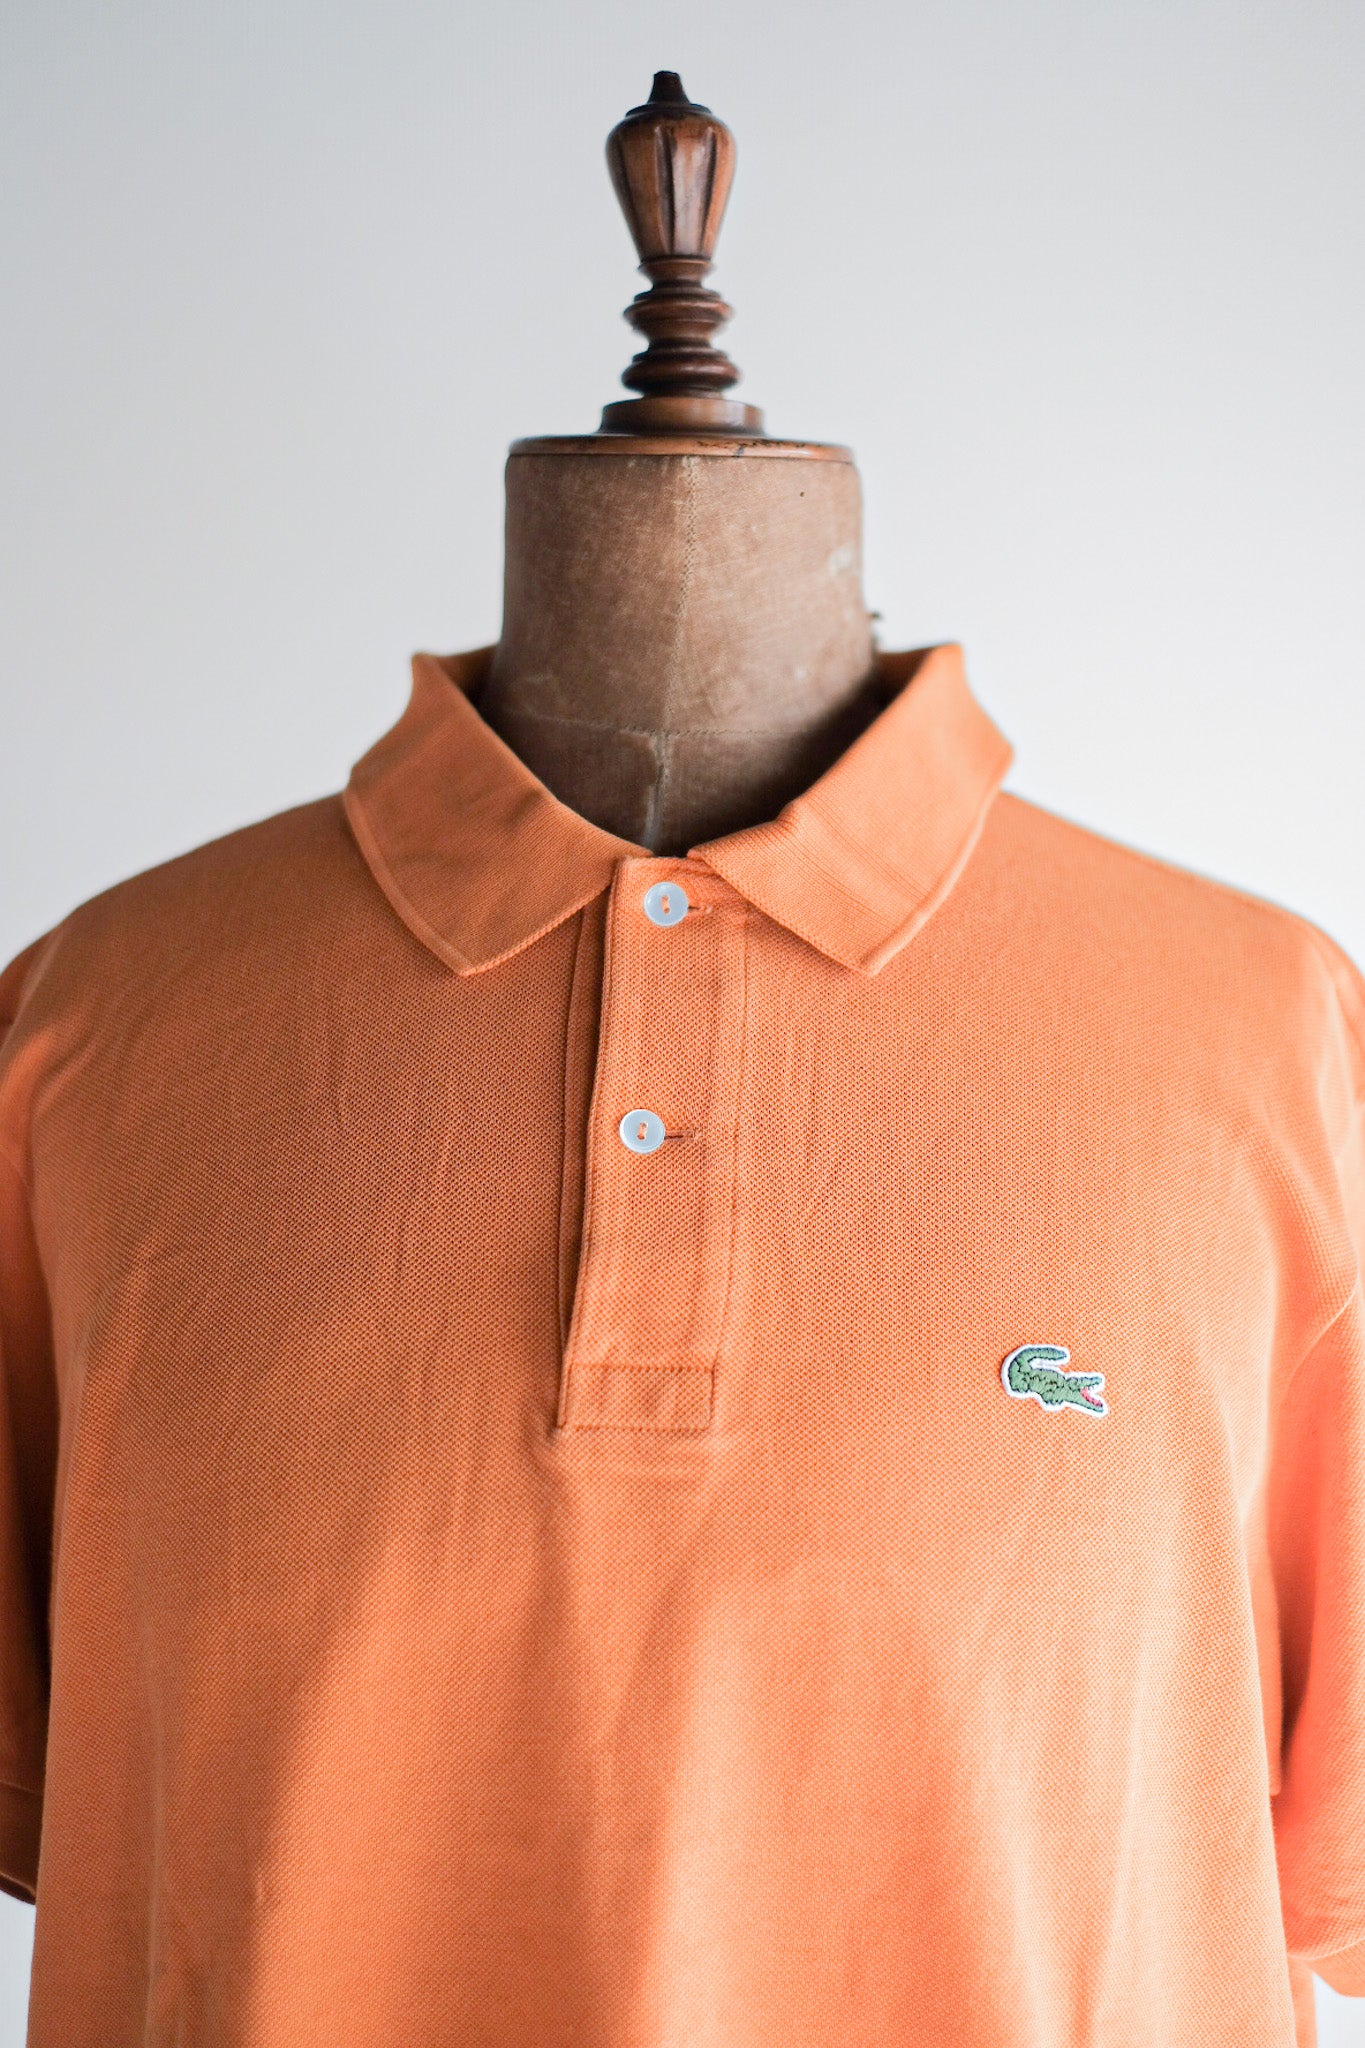 [〜80年代]顏料lacoste s/s polo襯衫尺寸。5“橙色”